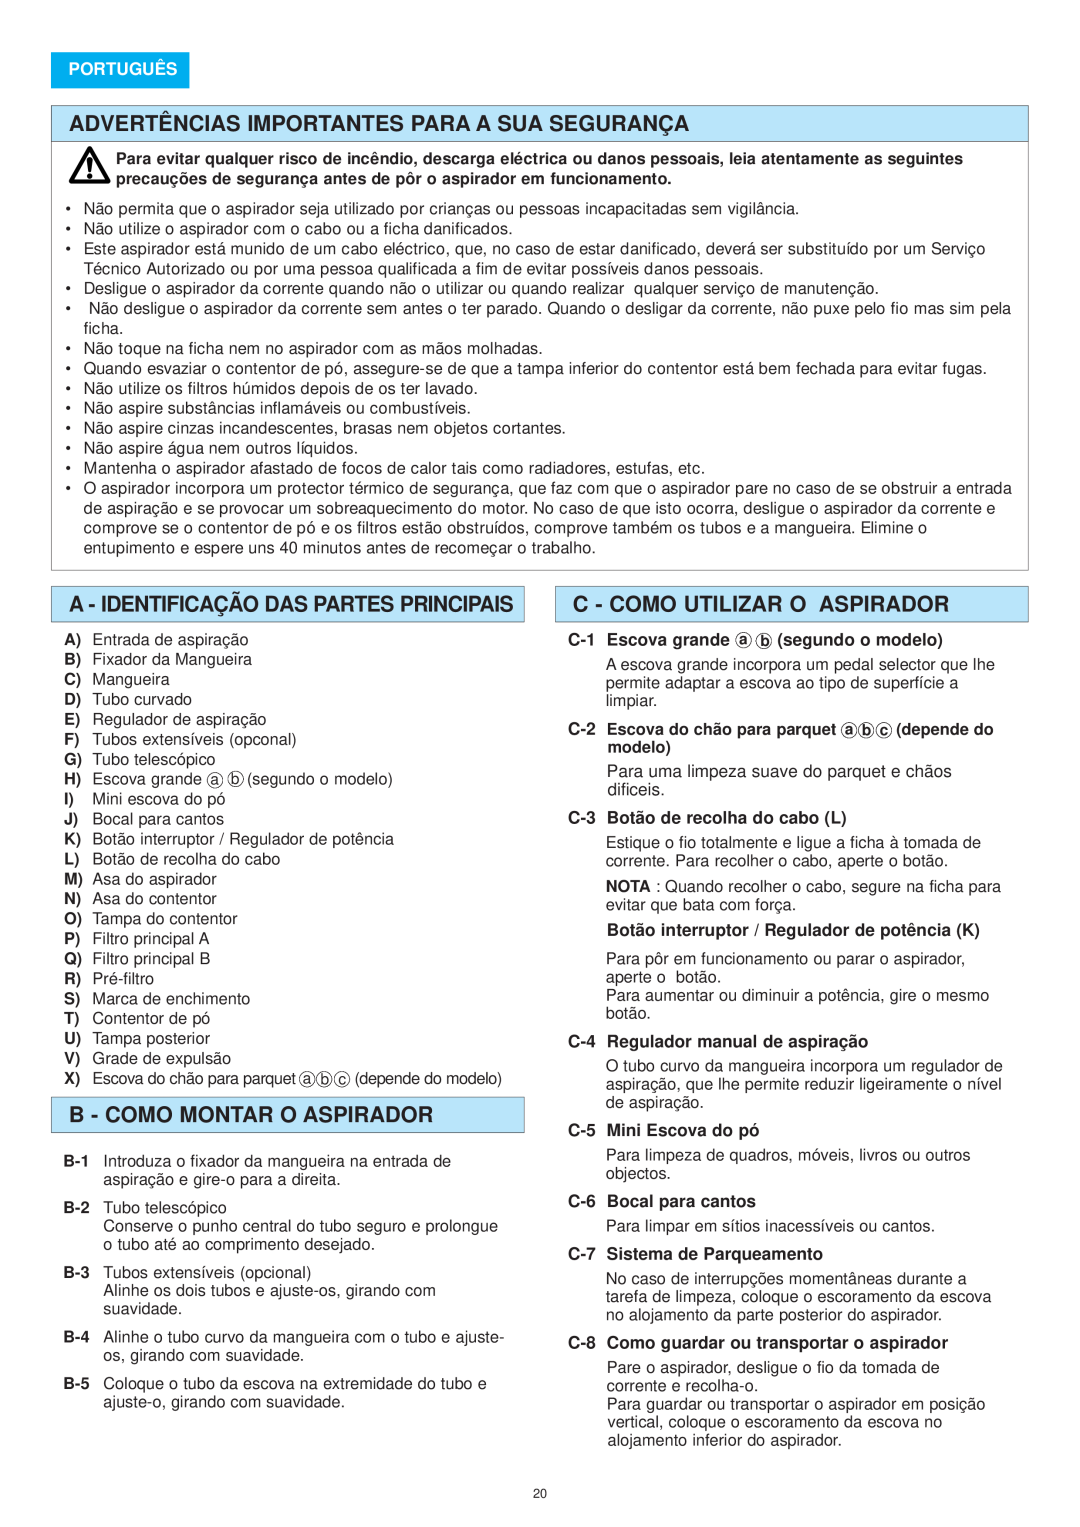 Panasonic MC-E8015 Advertências Importantes Para A Sua Segurança, A - Identificação Das Partes Principais, Português 